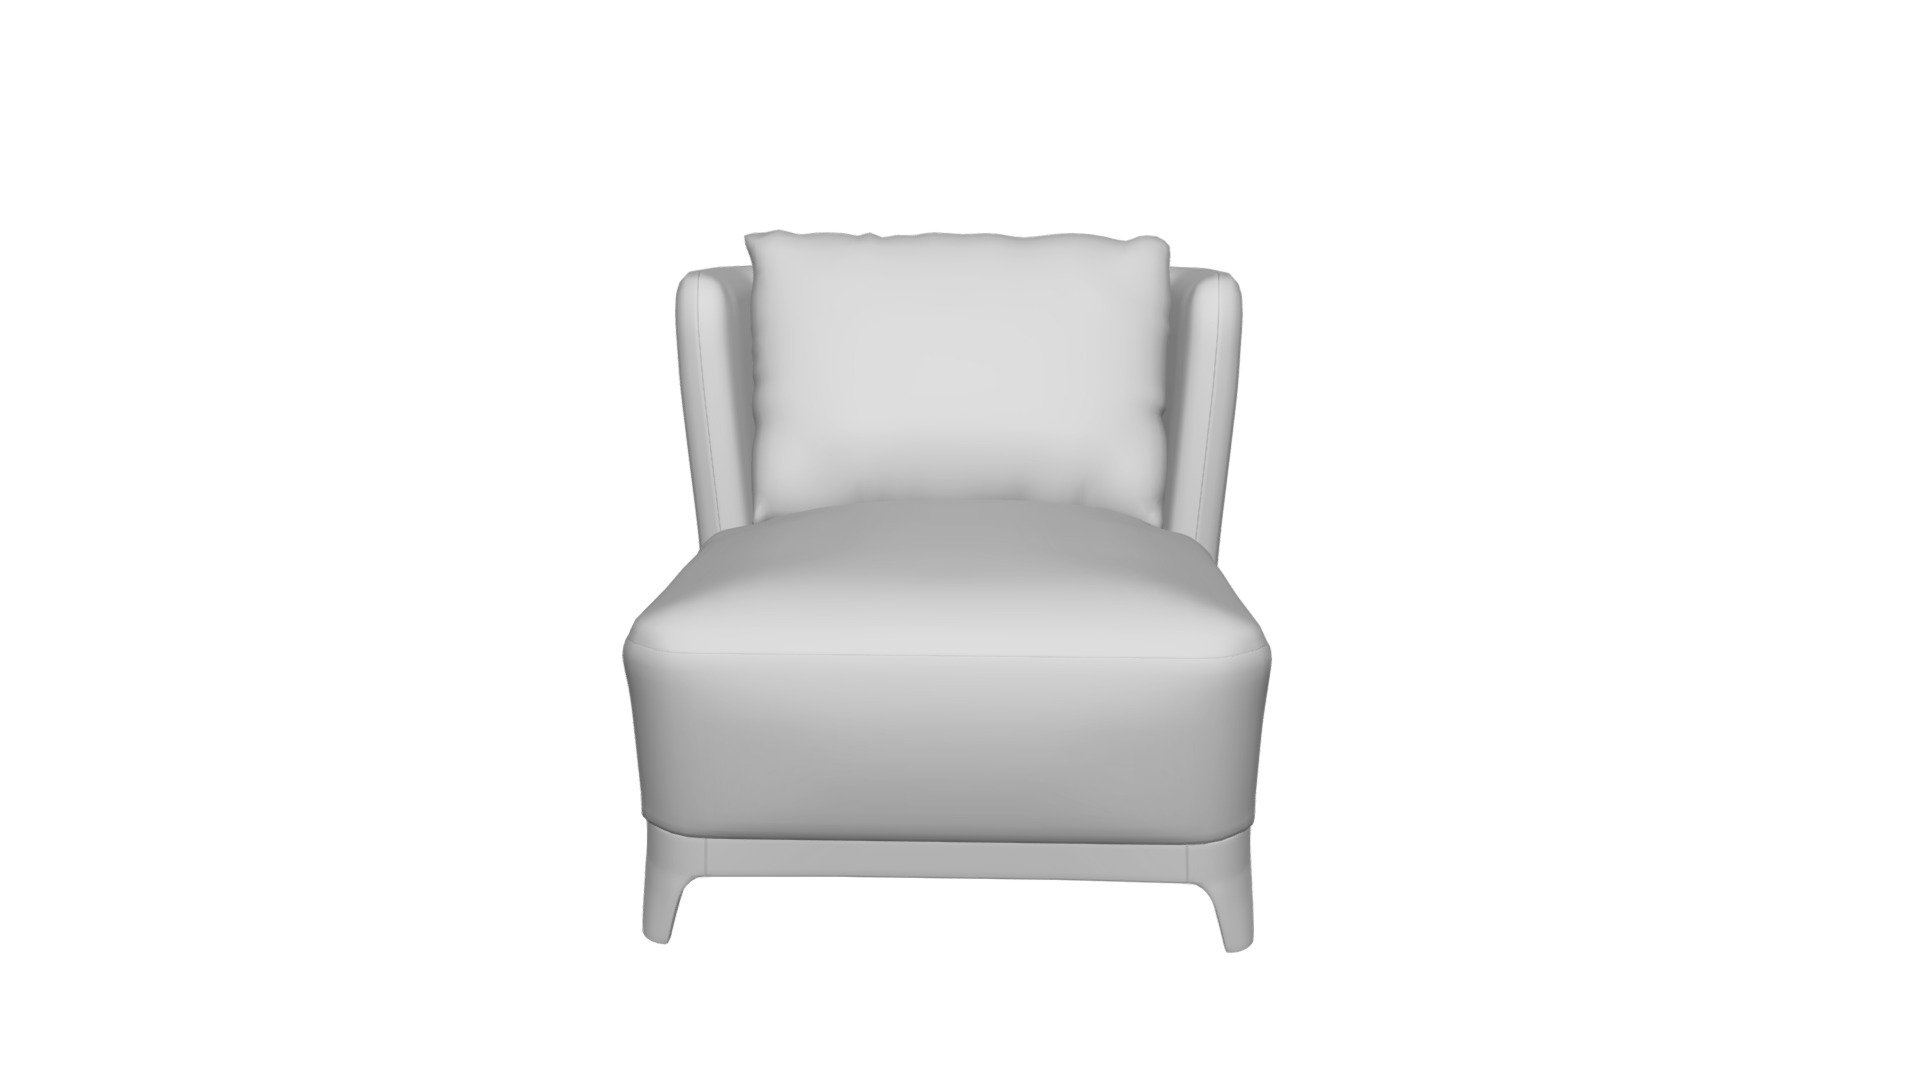 Chair ALMA white. DG-HOME